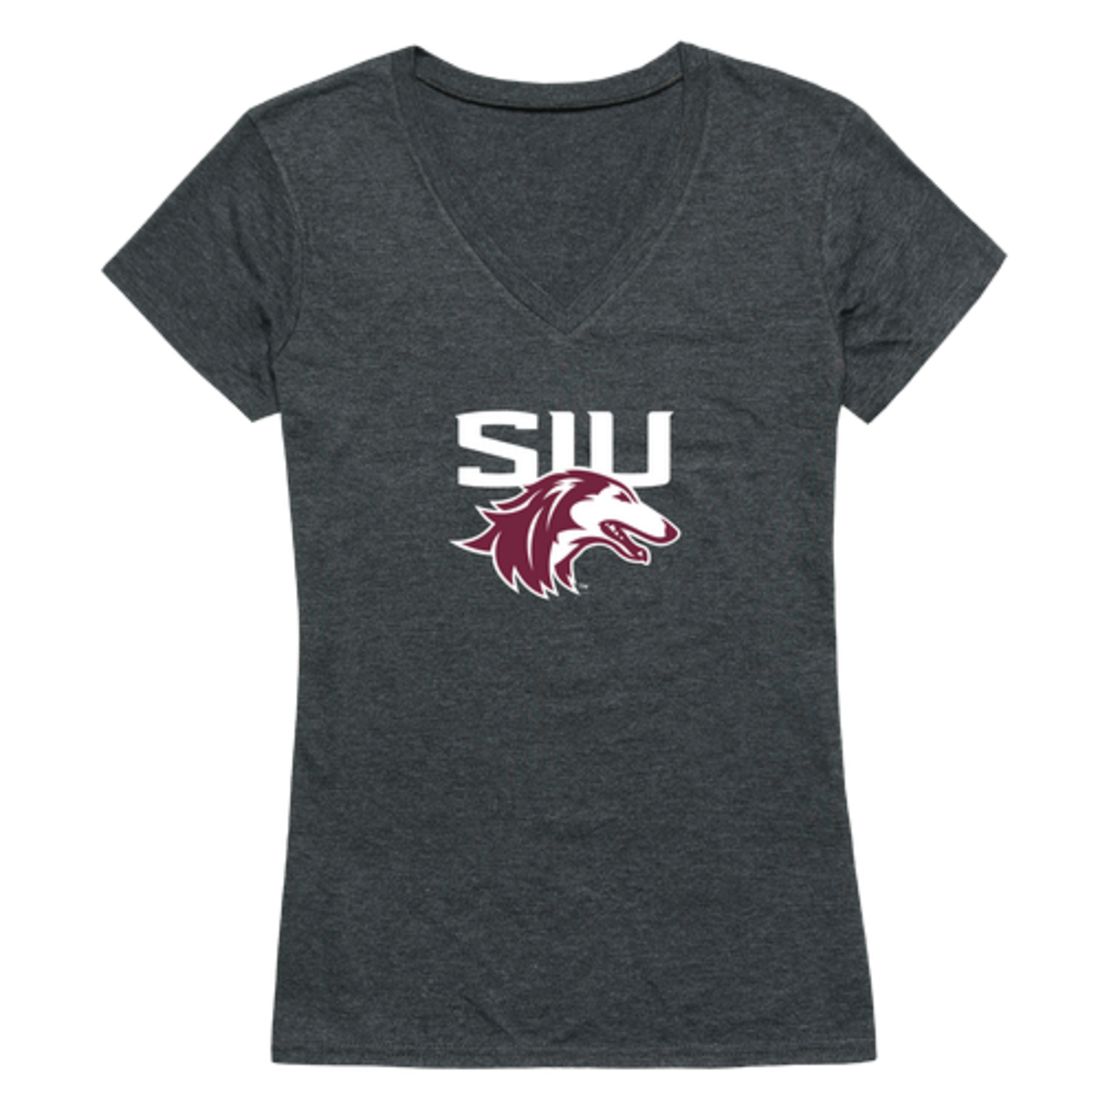 Southern Illinois University Salukis Womens Cinder T-Shirt